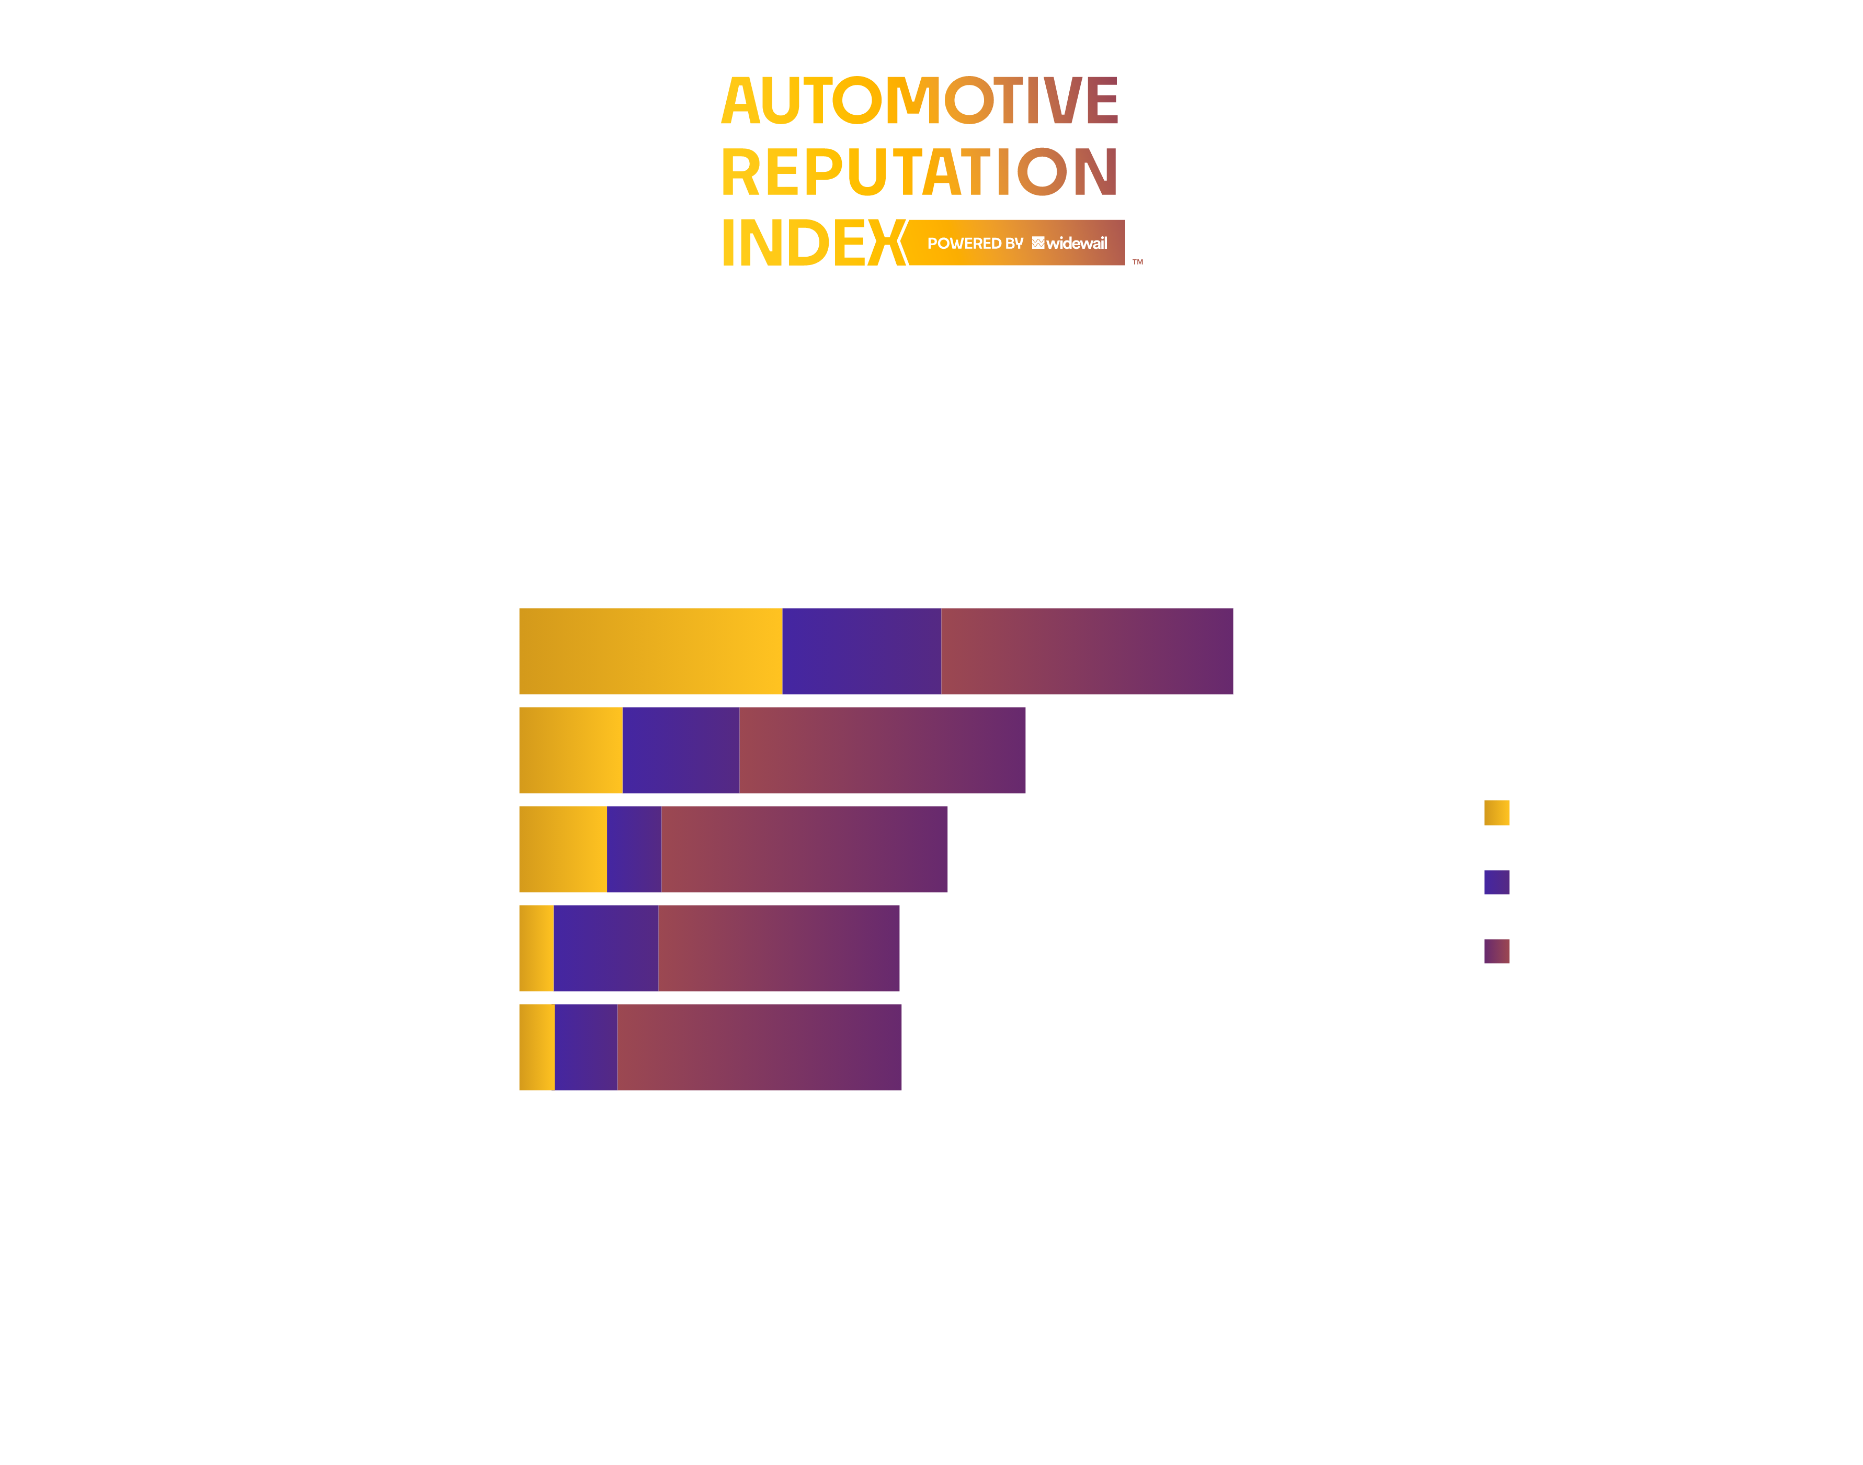 Top Non-Luxury Dealers in Grand Rapids